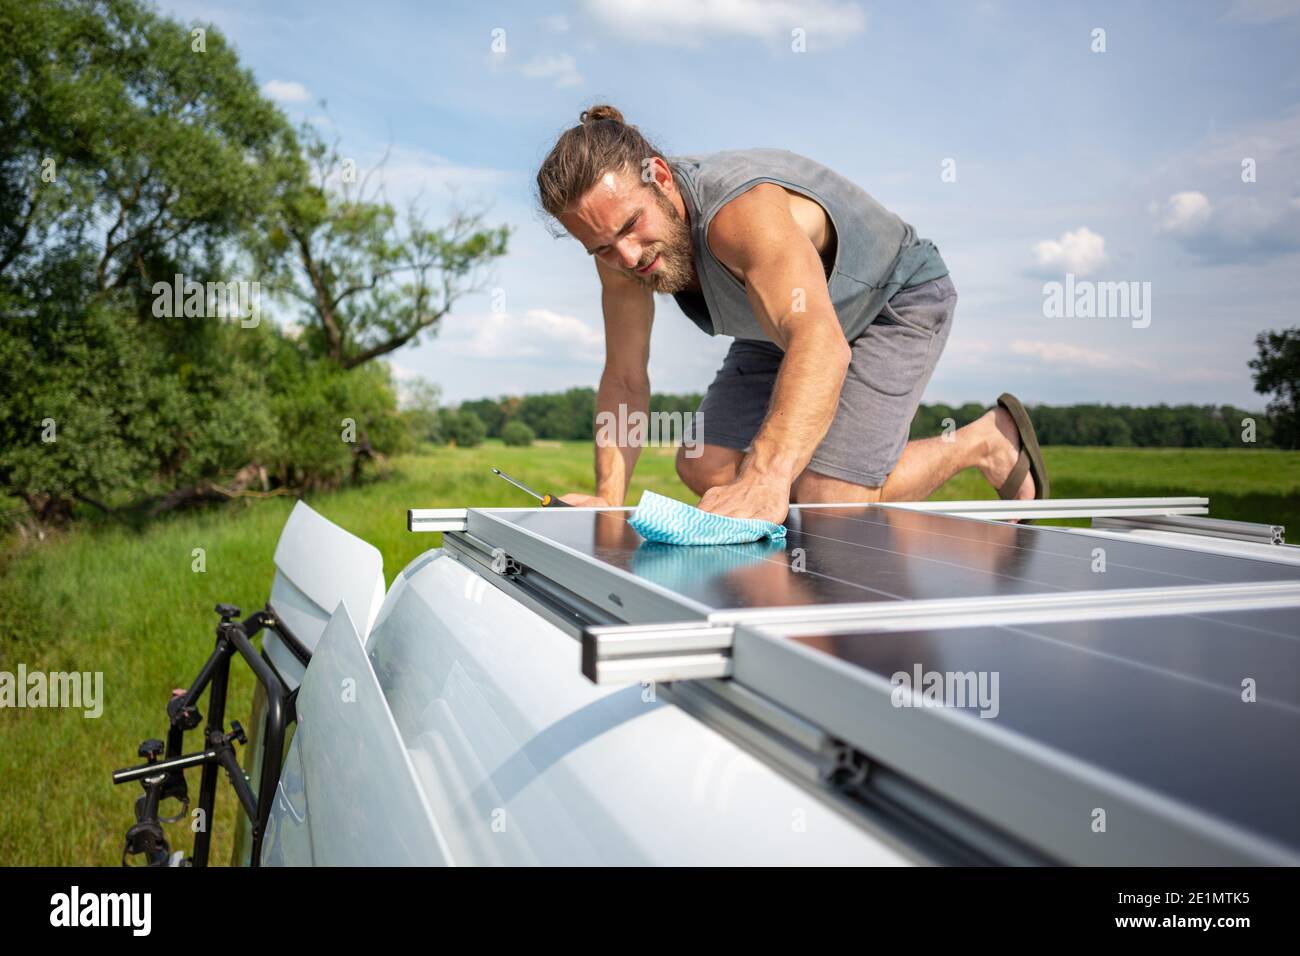 Hombre limpiando un panel solar en la parte superior de una caravana Foto de stock